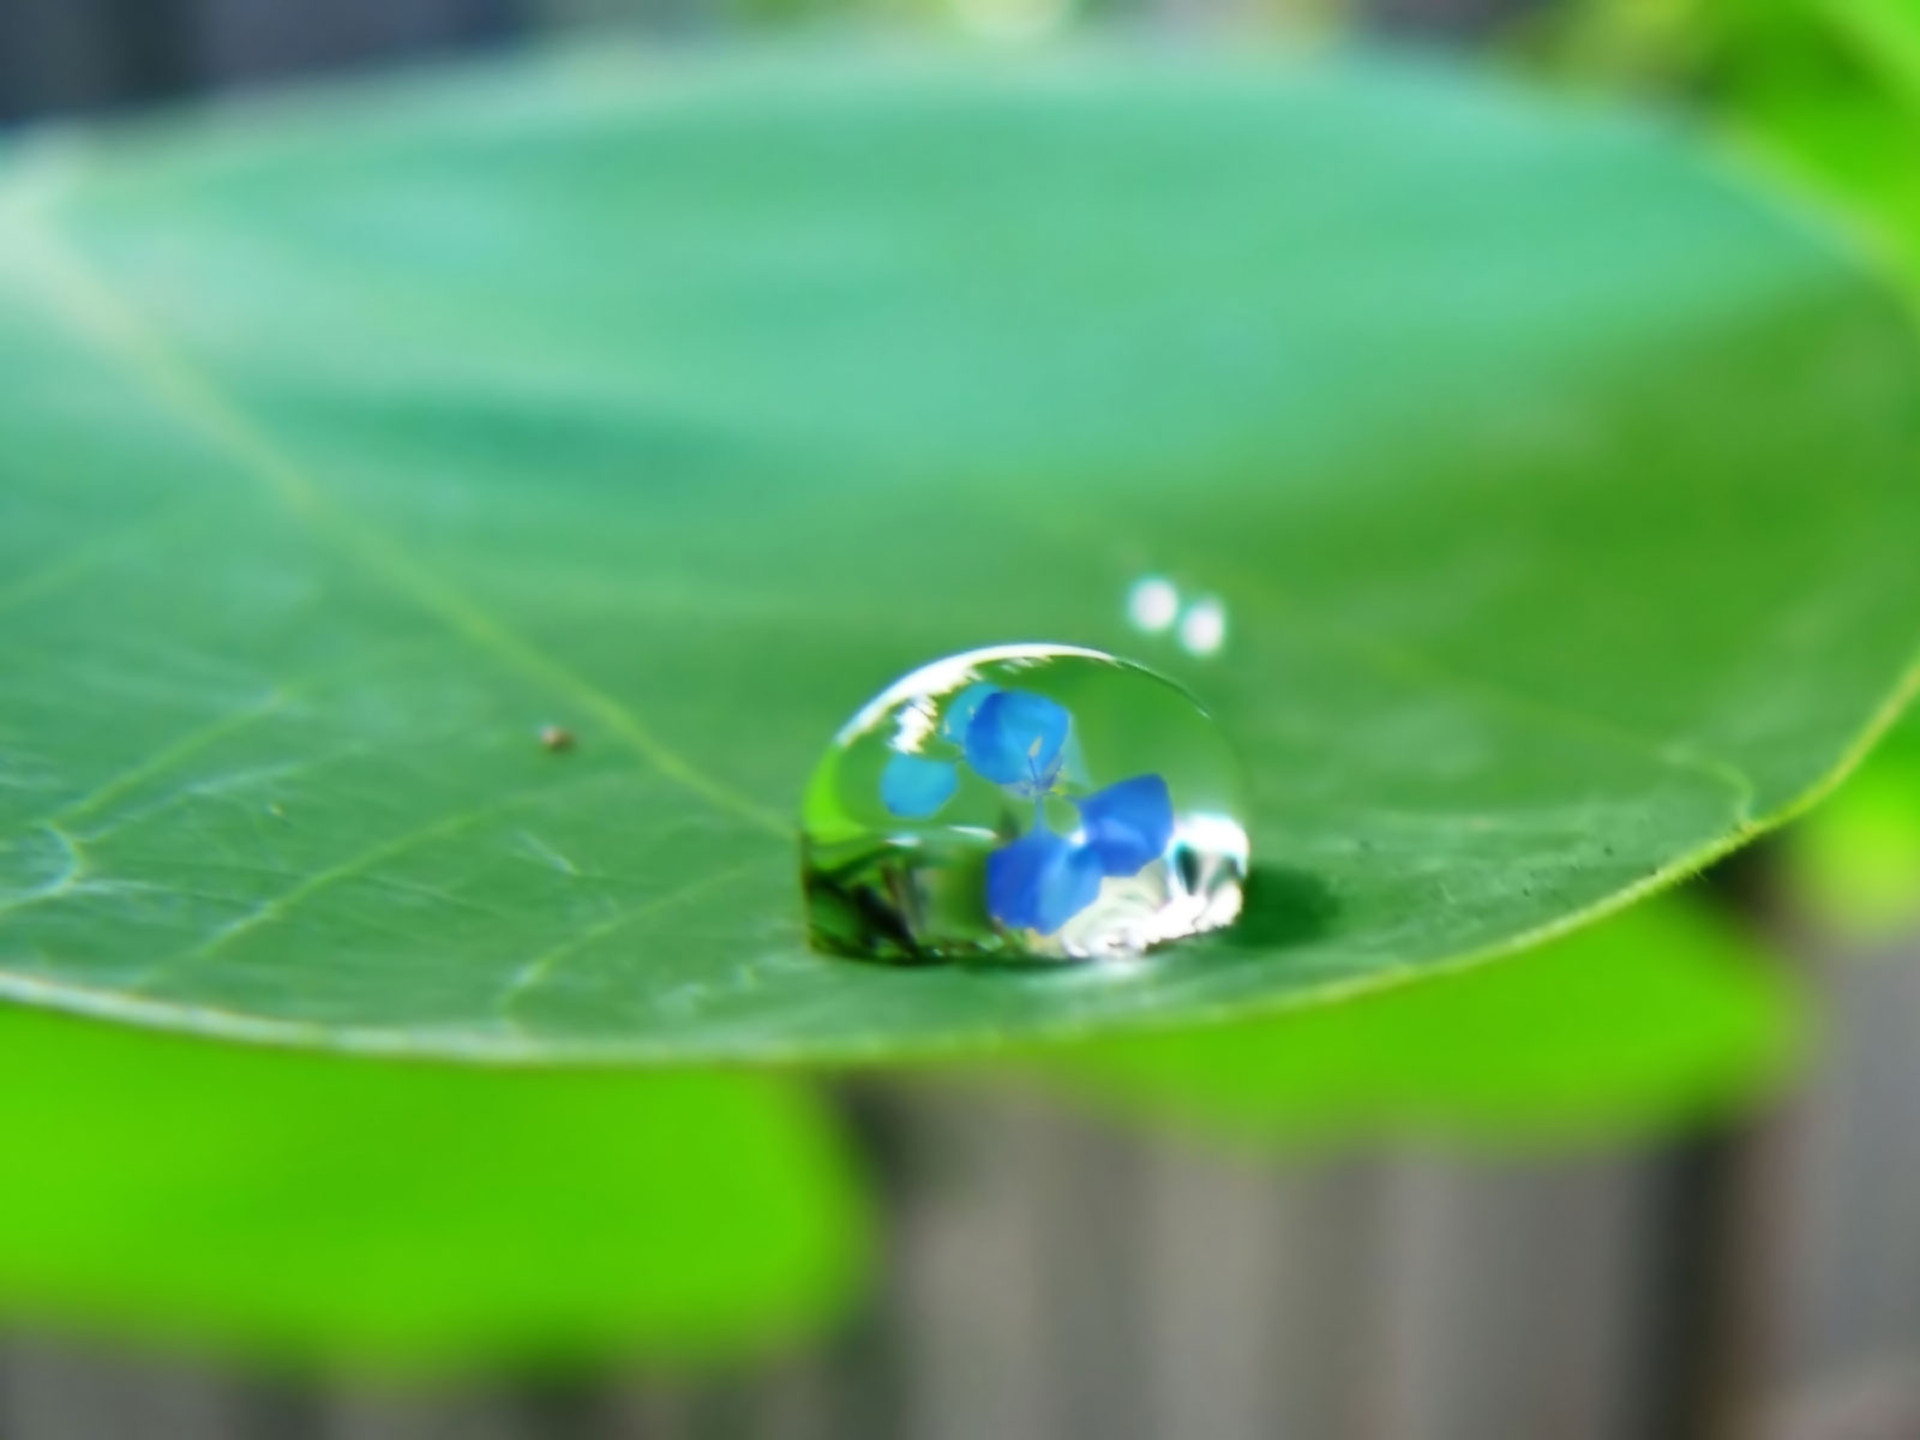 waterdrop on leaf